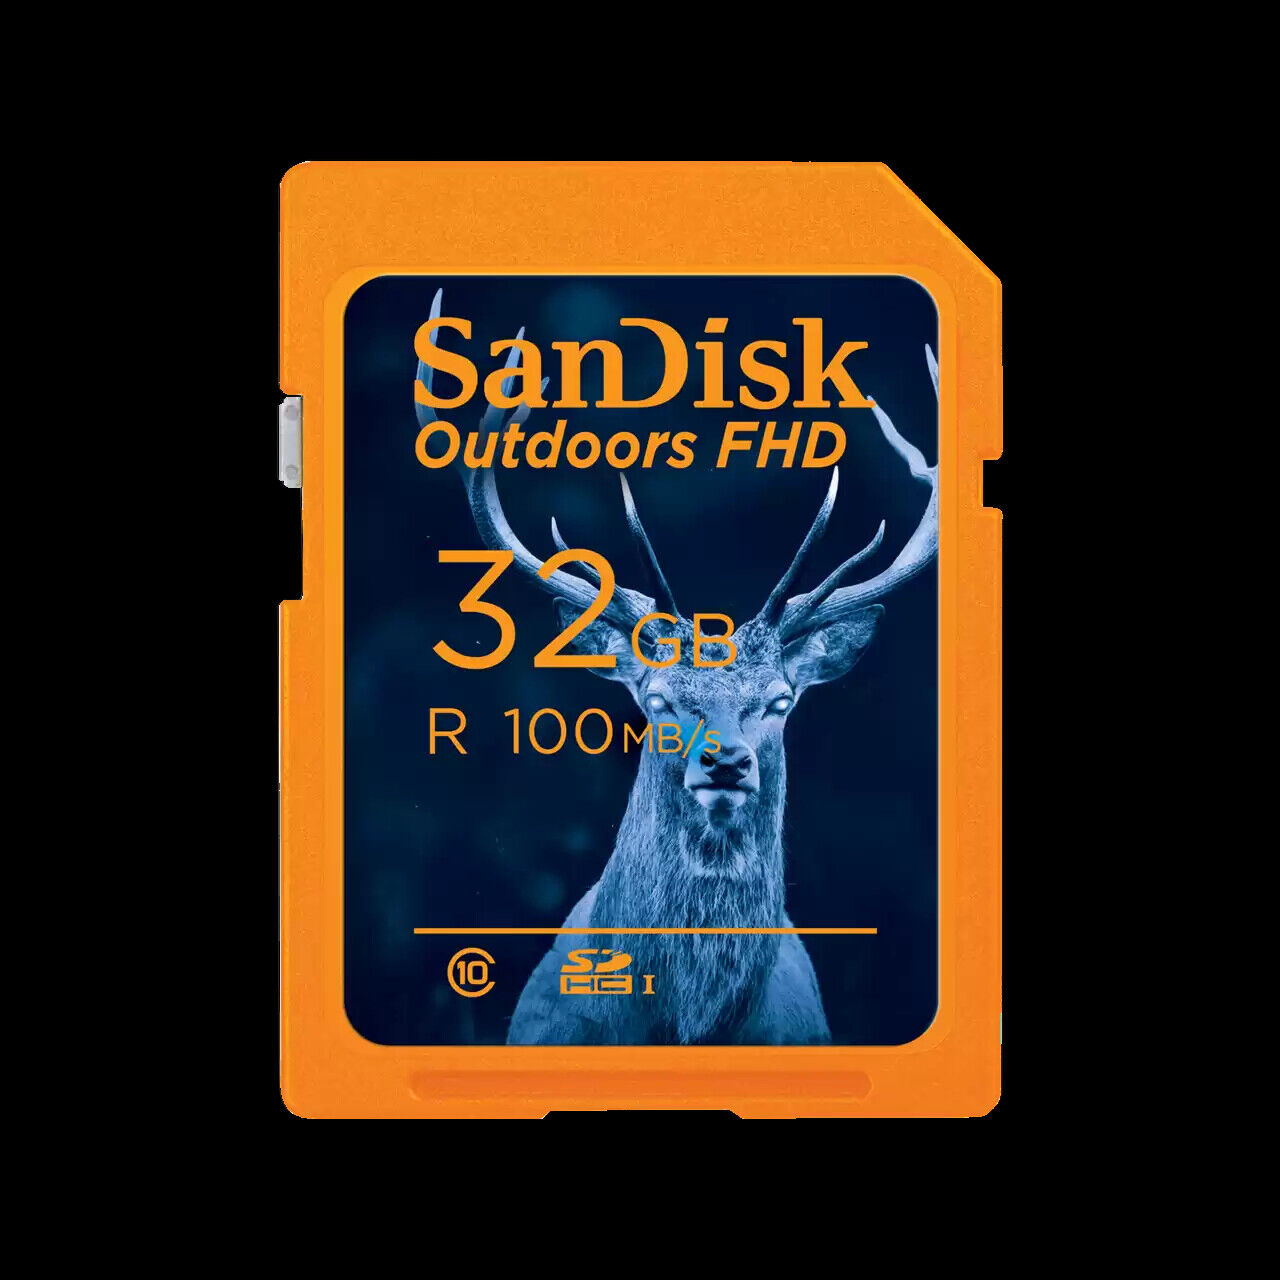 SanDisk 32GB Outdoors FHD microSDXC UHS-I Memory Card, 2-Pack SDSDUNR-032G-GN6V2